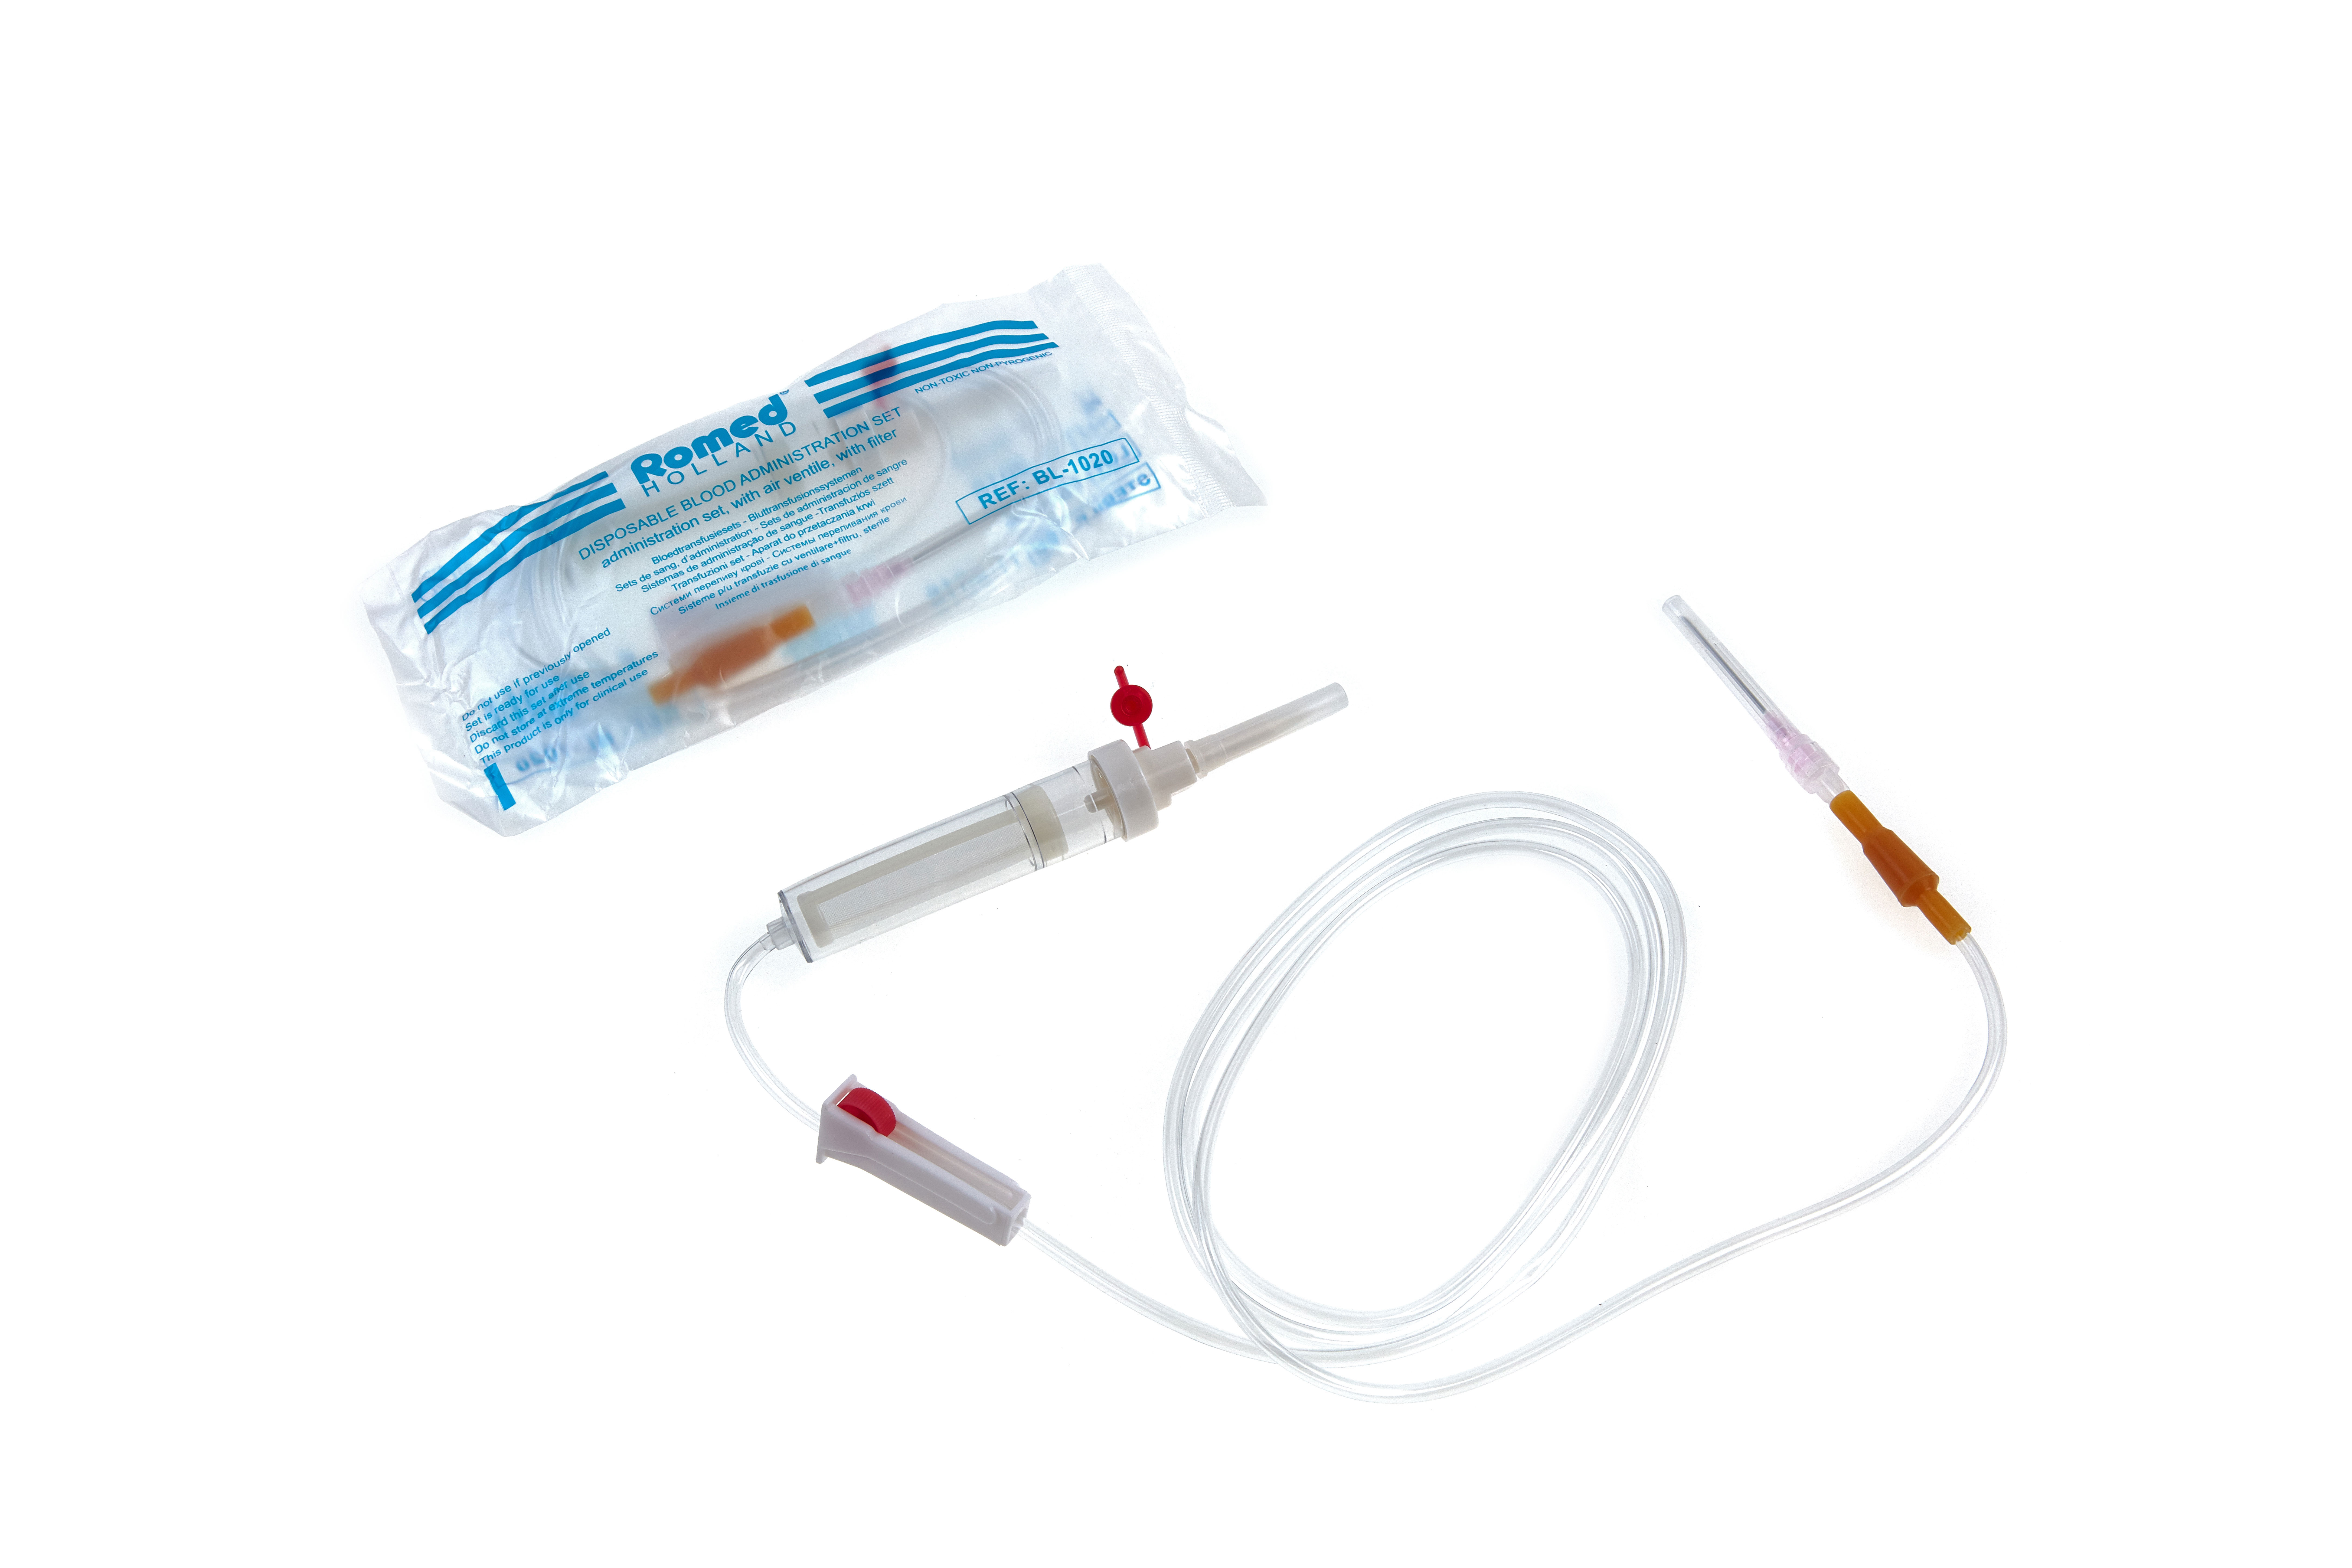 BL-1020 Romed bloedtransfusiesets met ventiel en filter, steriel, per stuk in een polyzakje, 250 stuks in een karton.